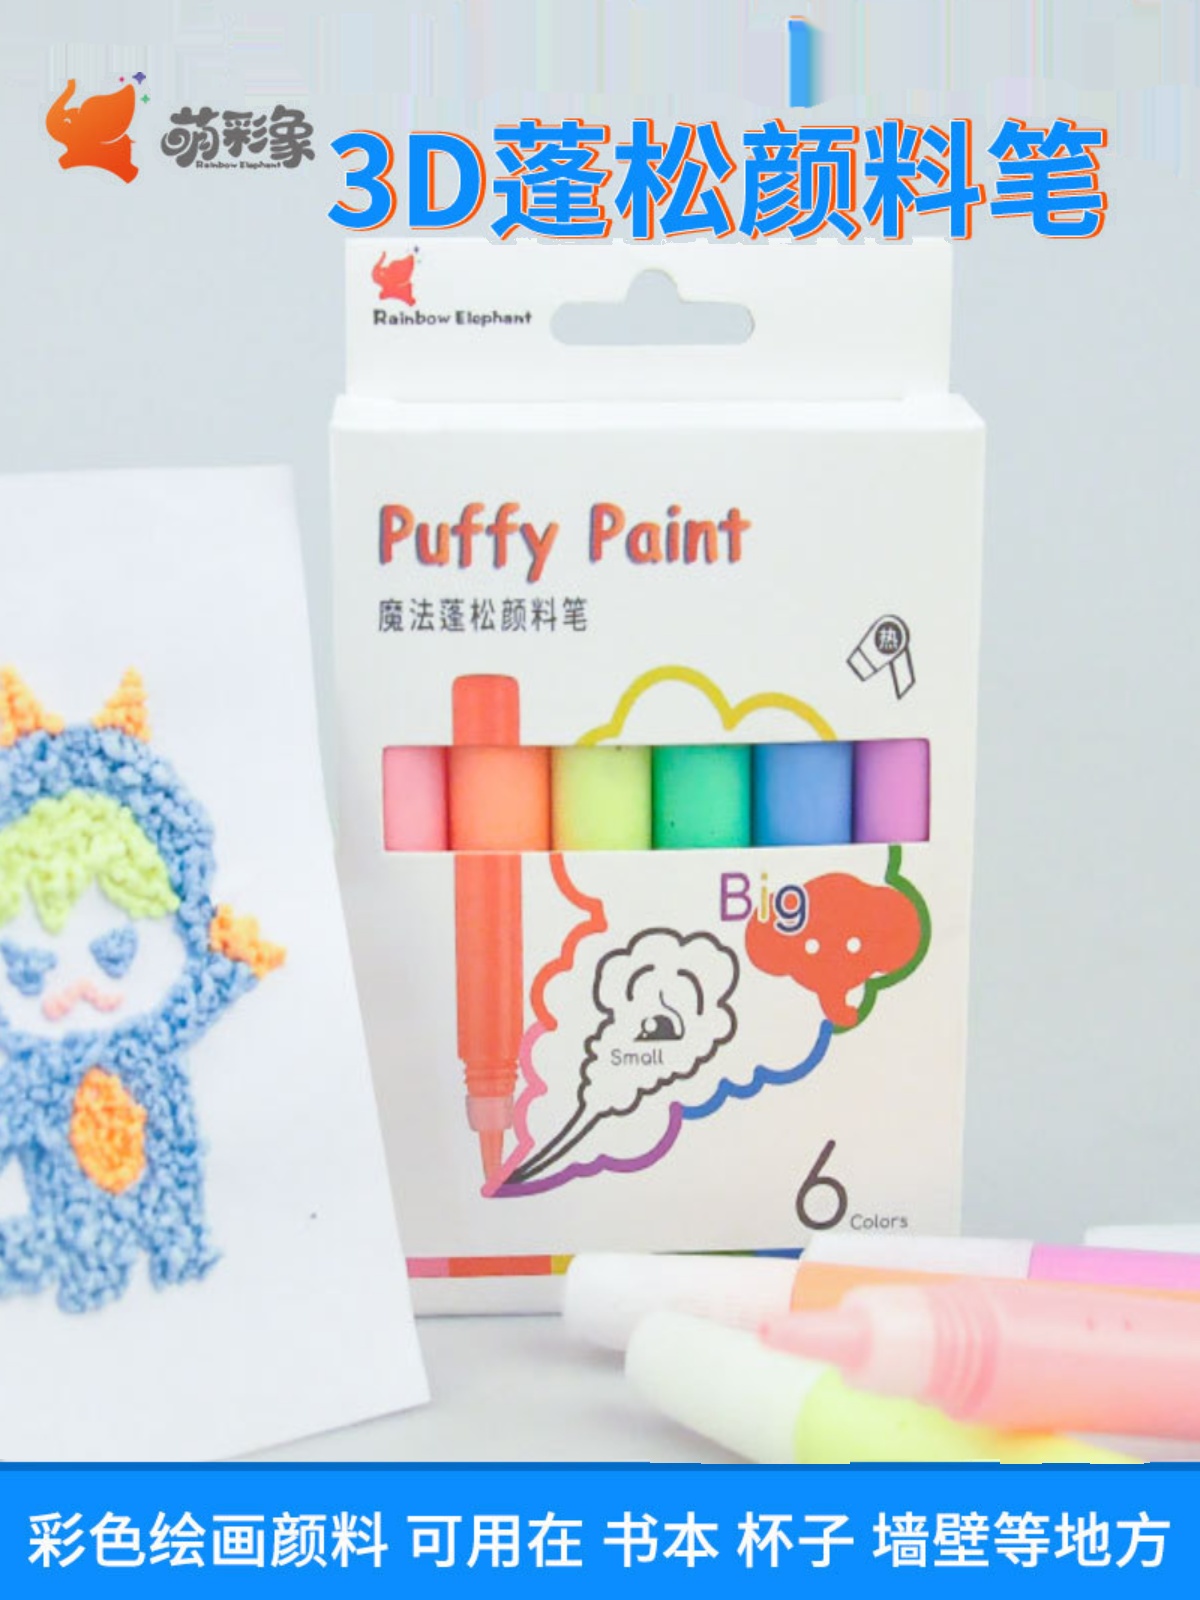 6色神器爆米花泡泡笔3d打印蓬松创意棉花涂鸦水彩笔立体画笔儿童手动diy玩具膨胀立体画画笔趣味糖果色魔术笔